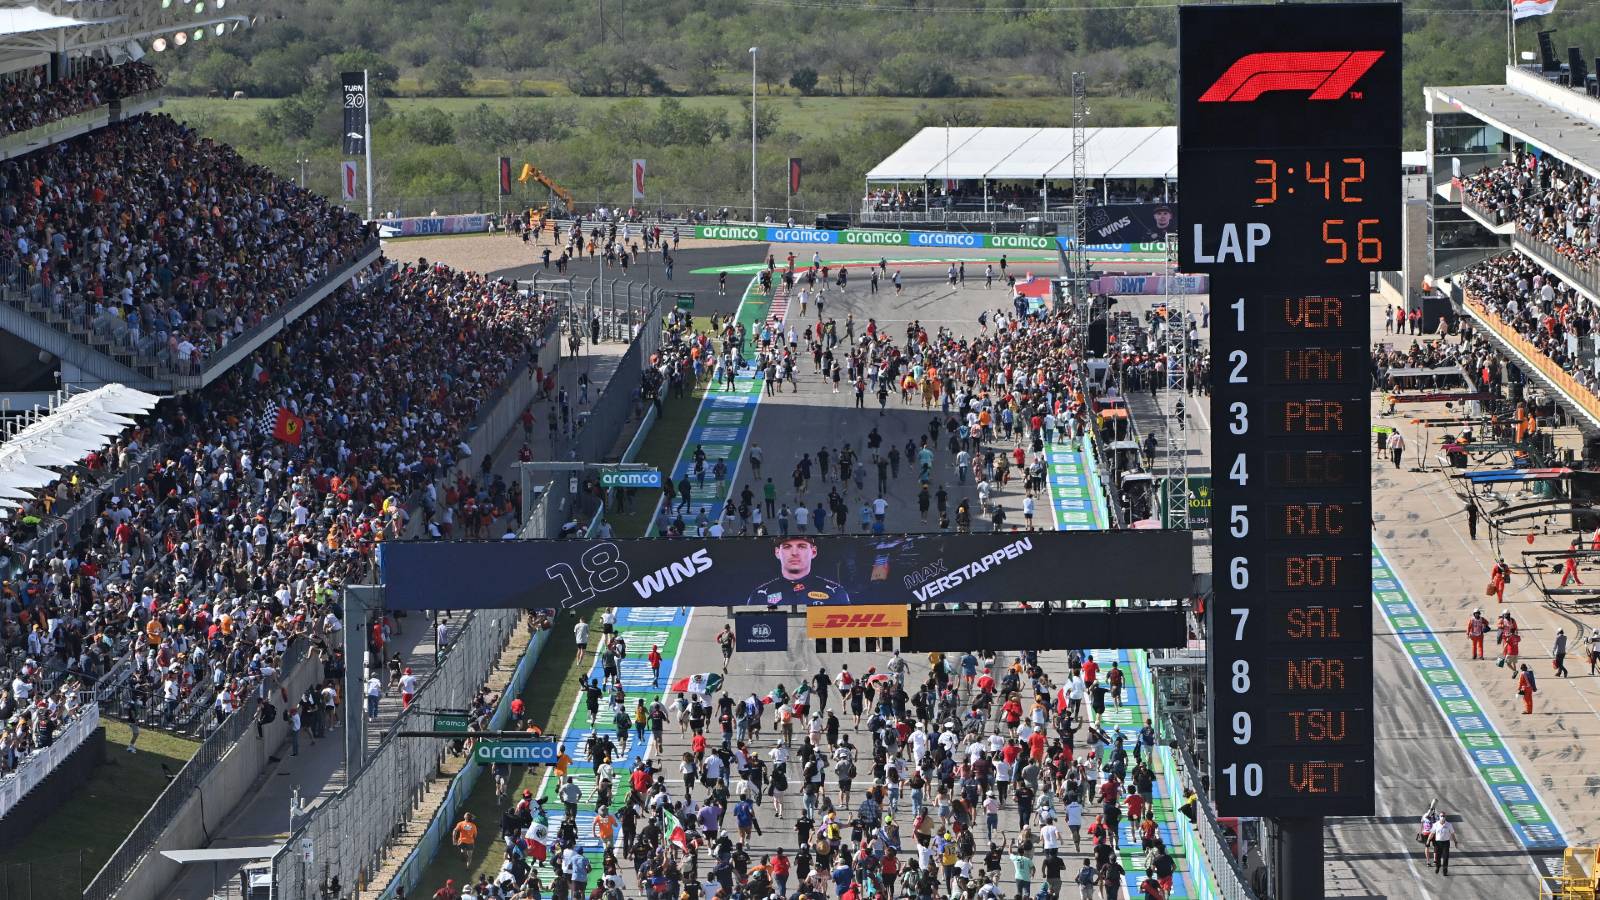 Les fans envahissent la piste après le GP des États-Unis.  Austin octobre 2021.